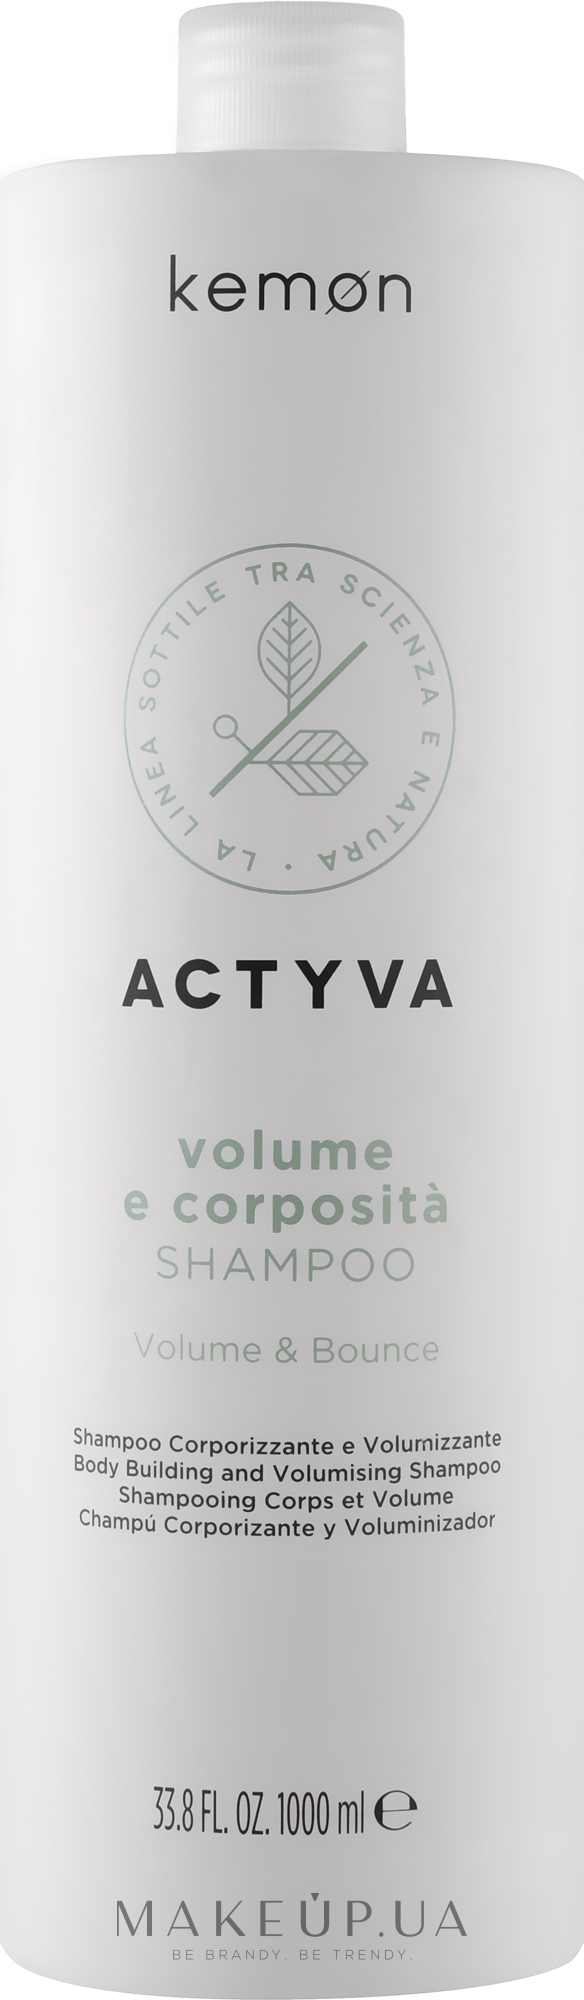 Шампунь для додання волоссю об'єму - Kemon Actyva Volume e Corposita Shampoo — фото 1000ml